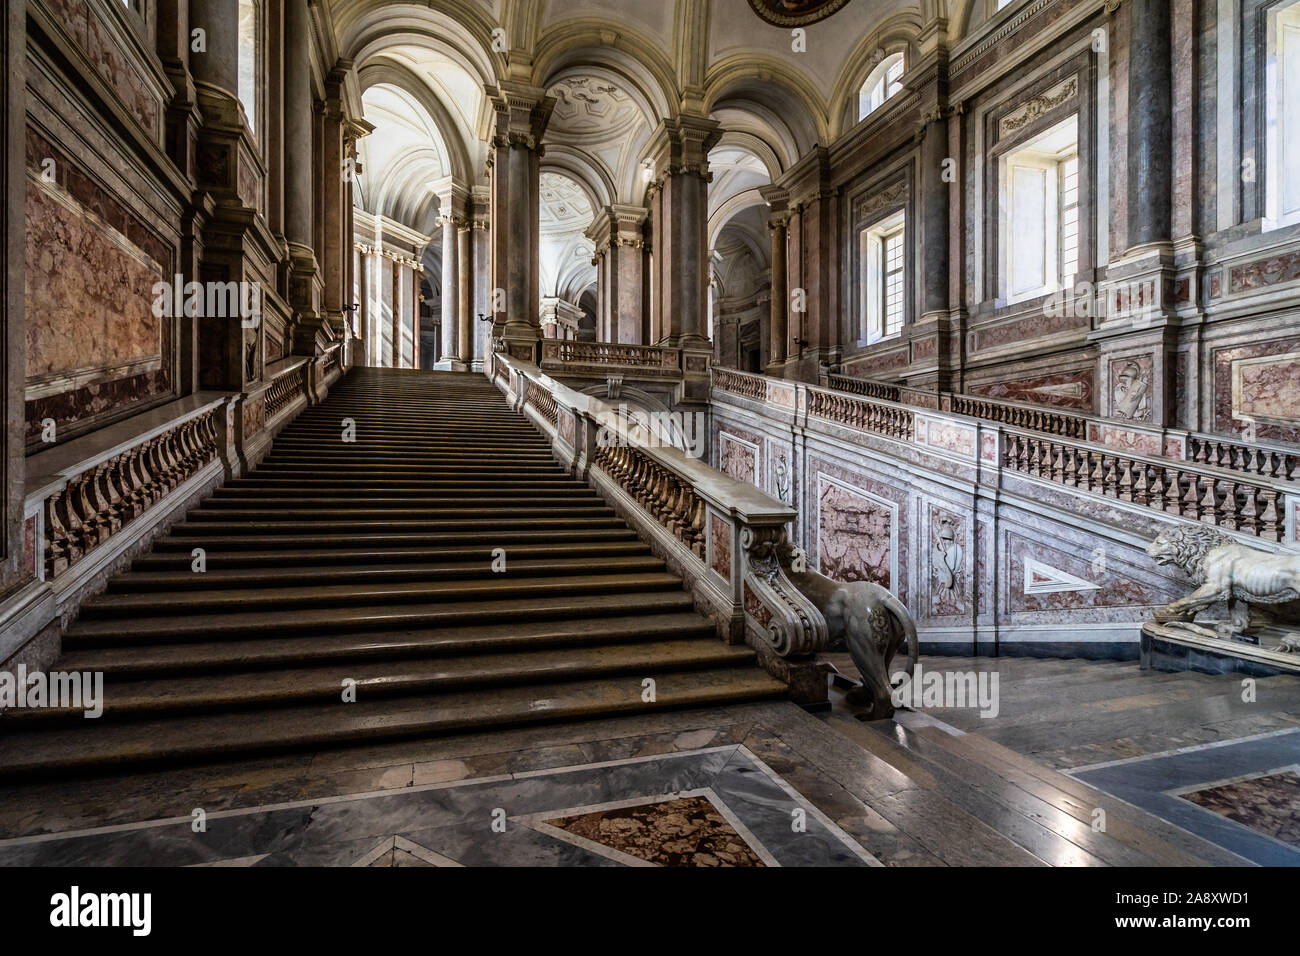 Die Treppe des Königspalast von Caserta von Vanvitelli ist die perfekte Synthese aus barocken und neoklassischen Stil. Caserta, Italien, Oktober 2019 Stockfoto